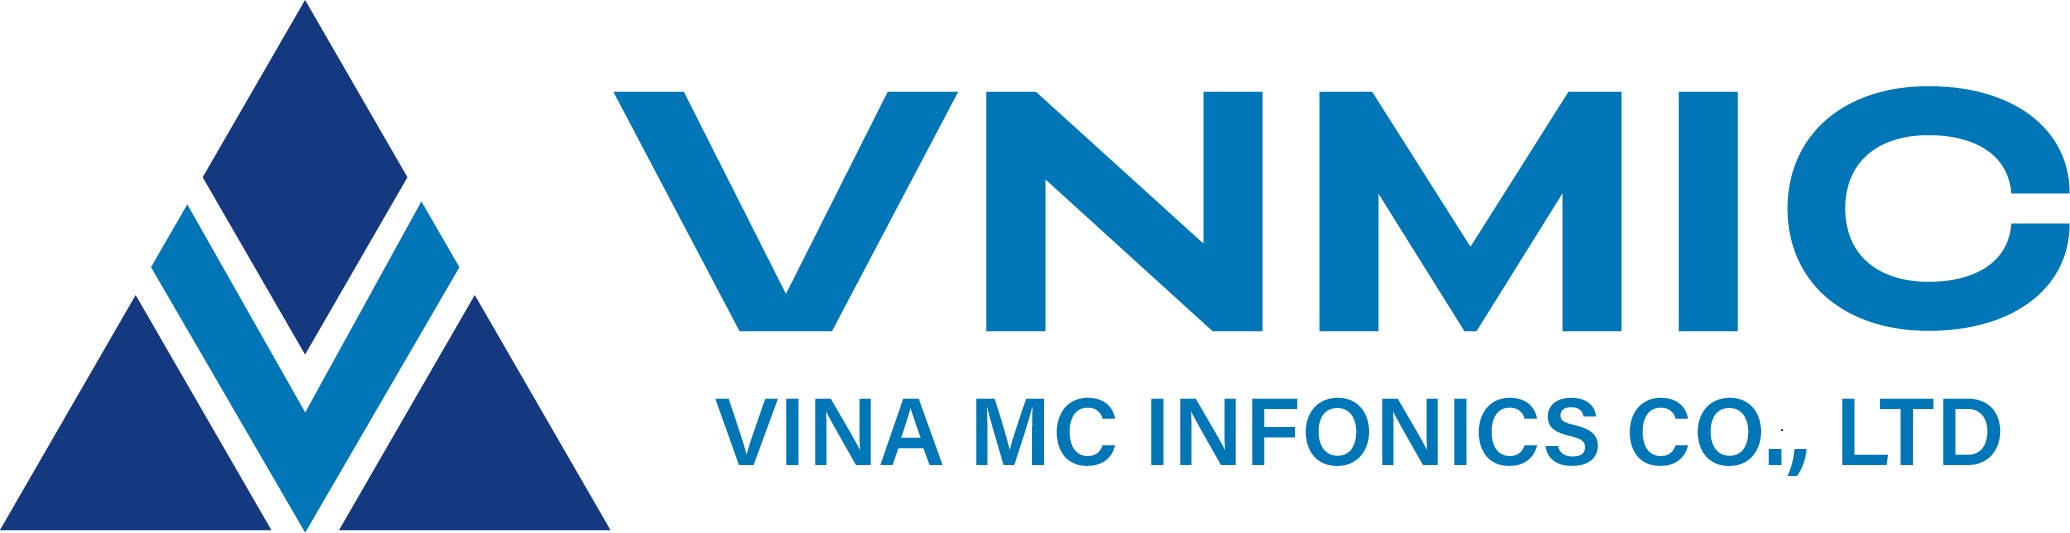 1. Logo Vnmic 06 (002)